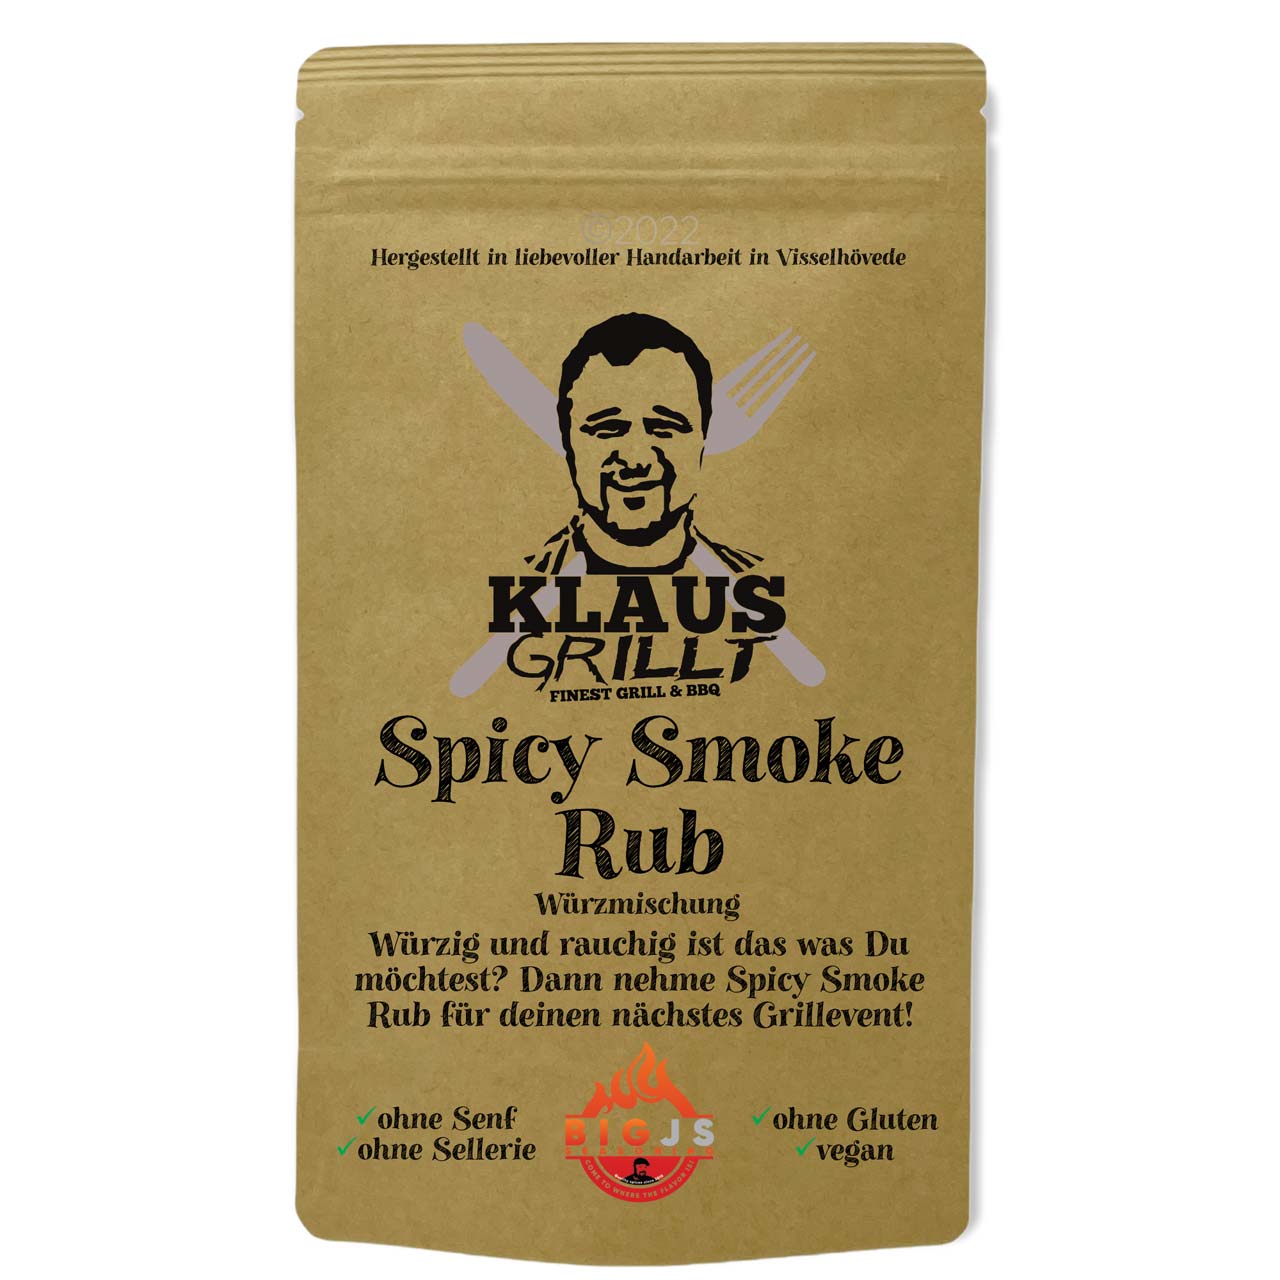 Klaus Grillt Spicy Smoke Rub, 250 g Beutel